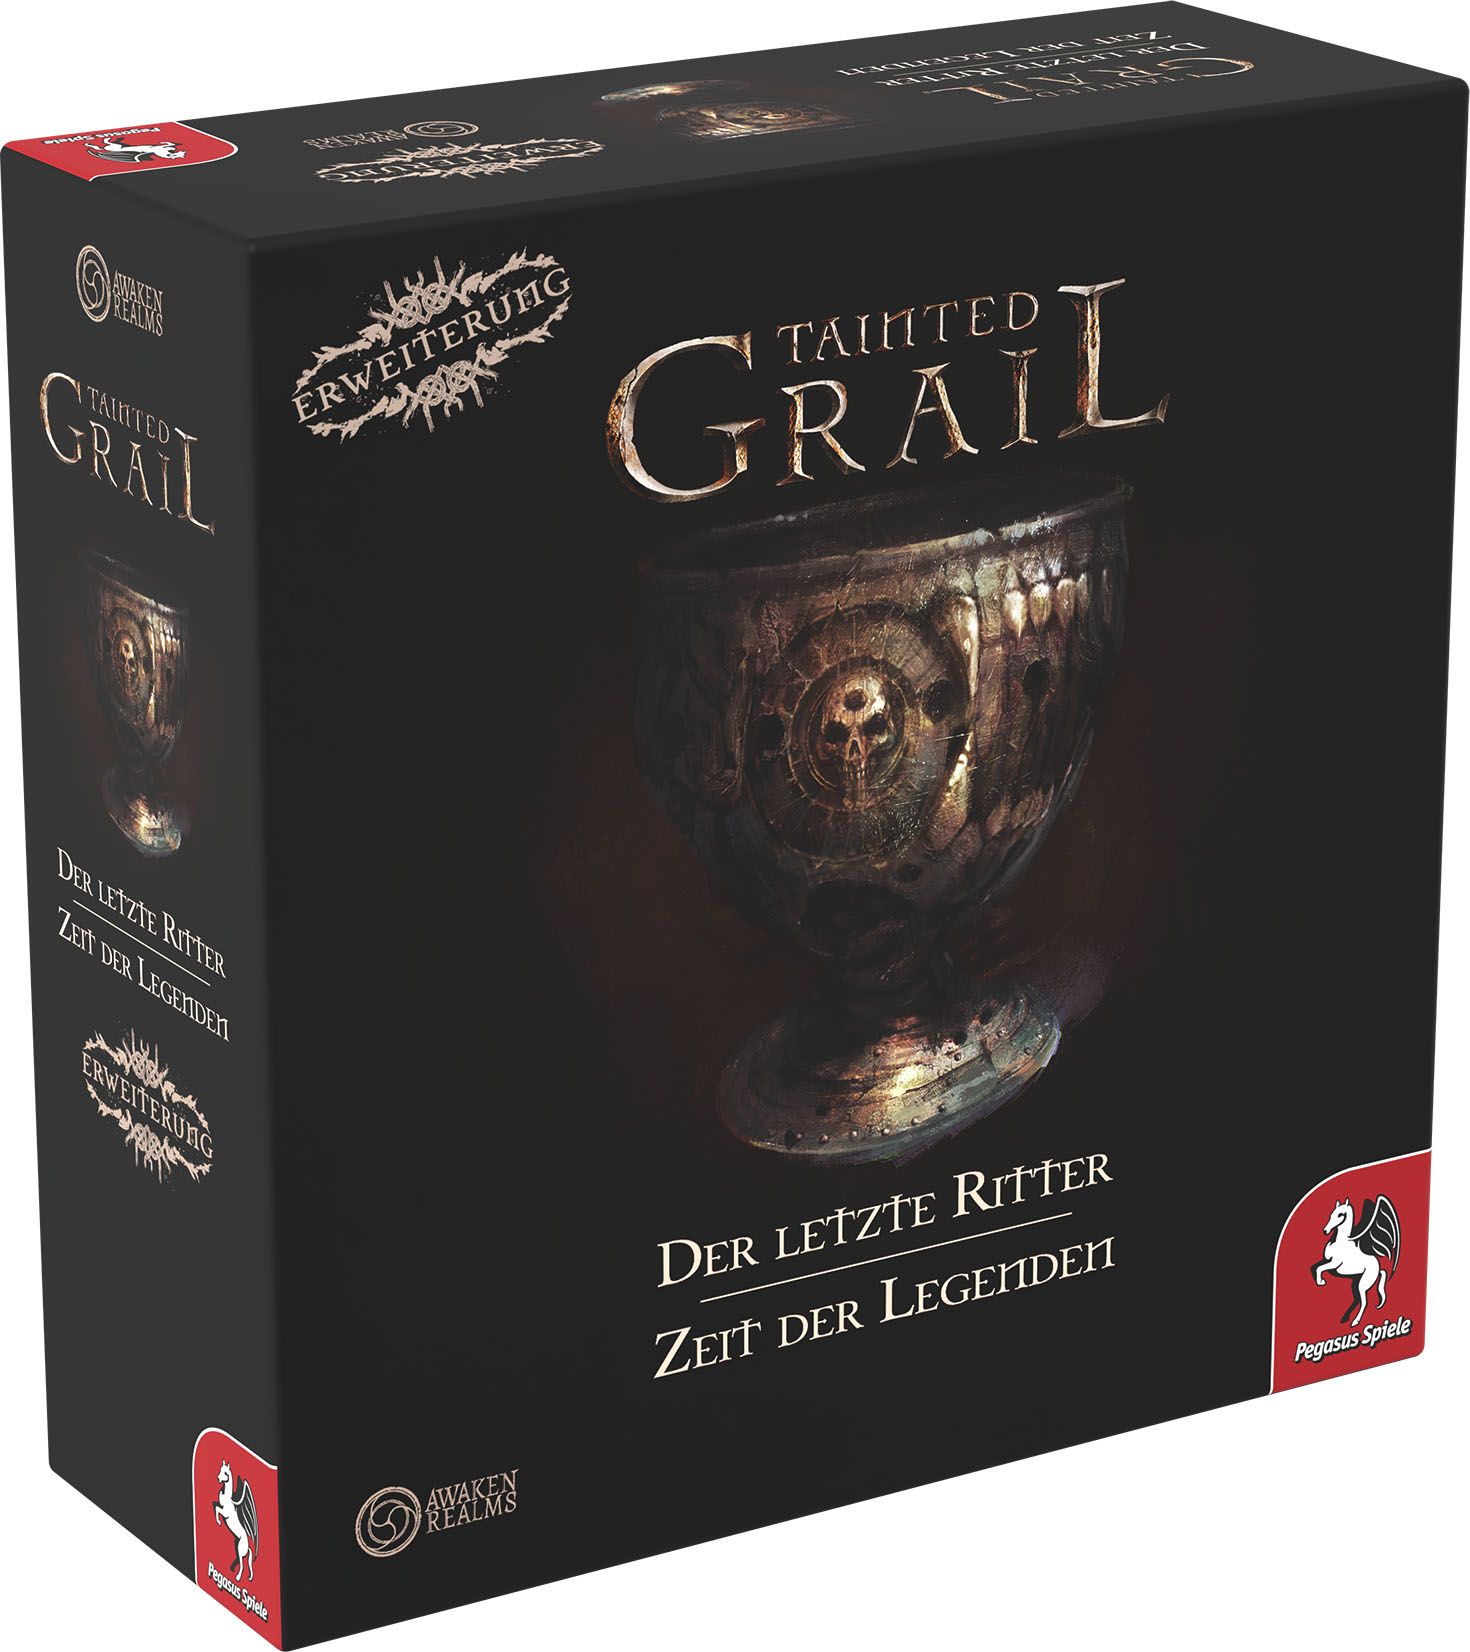 Tainted Grail: Der letzte Ritter und Zeit der Legenden